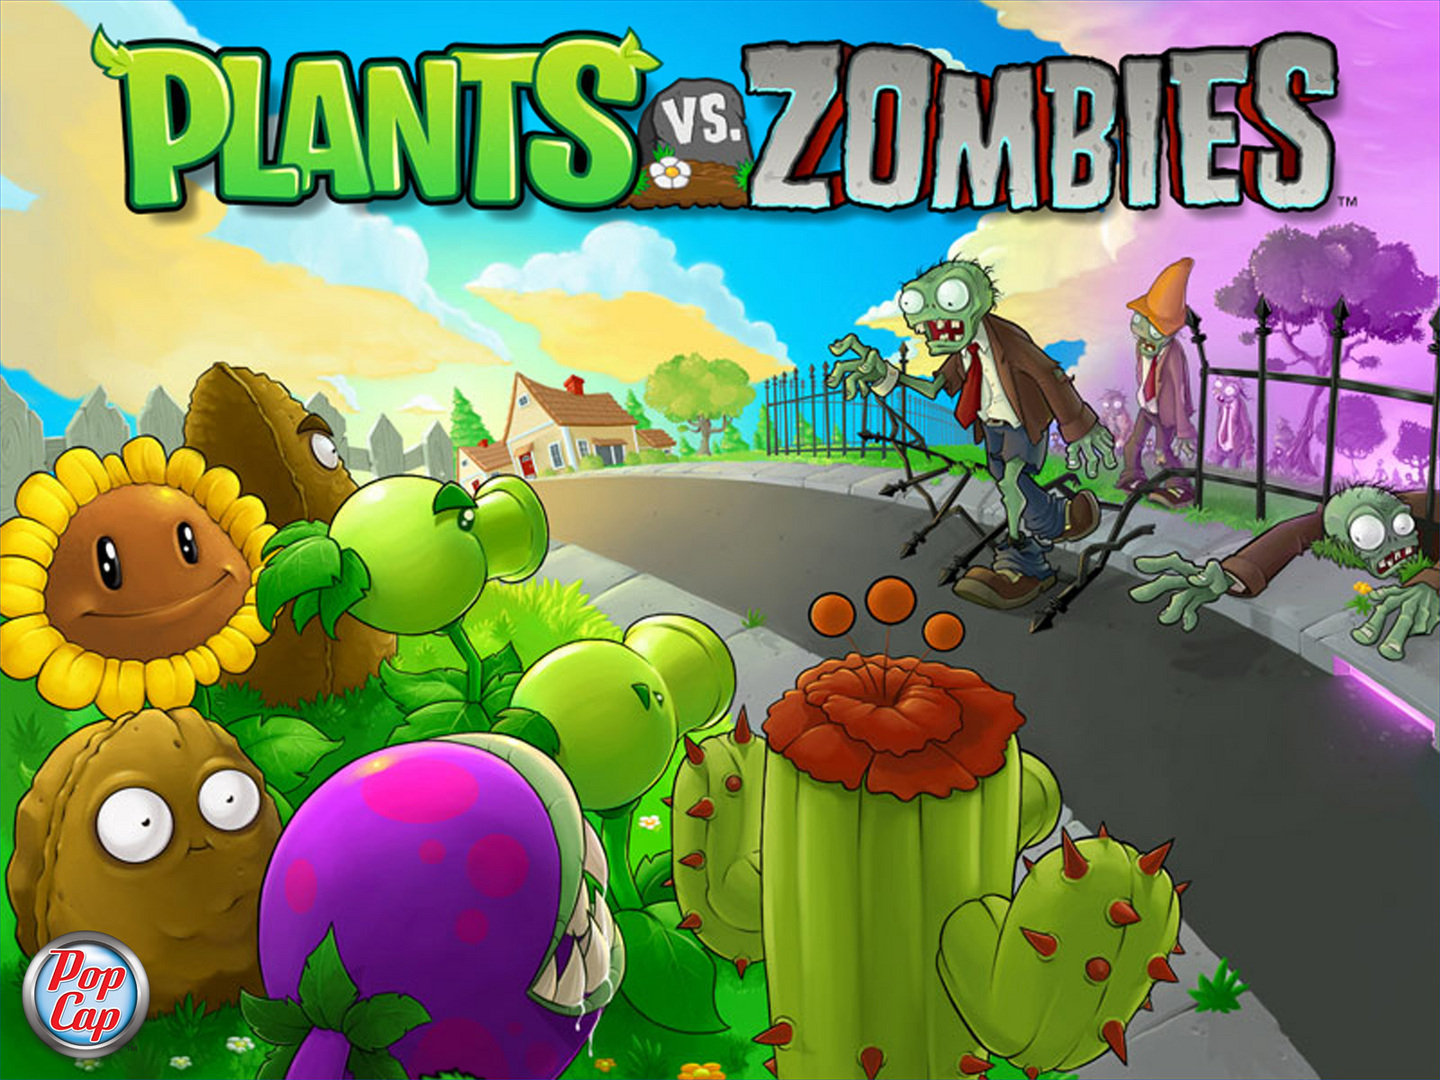 Buy Plants vs. Zombies